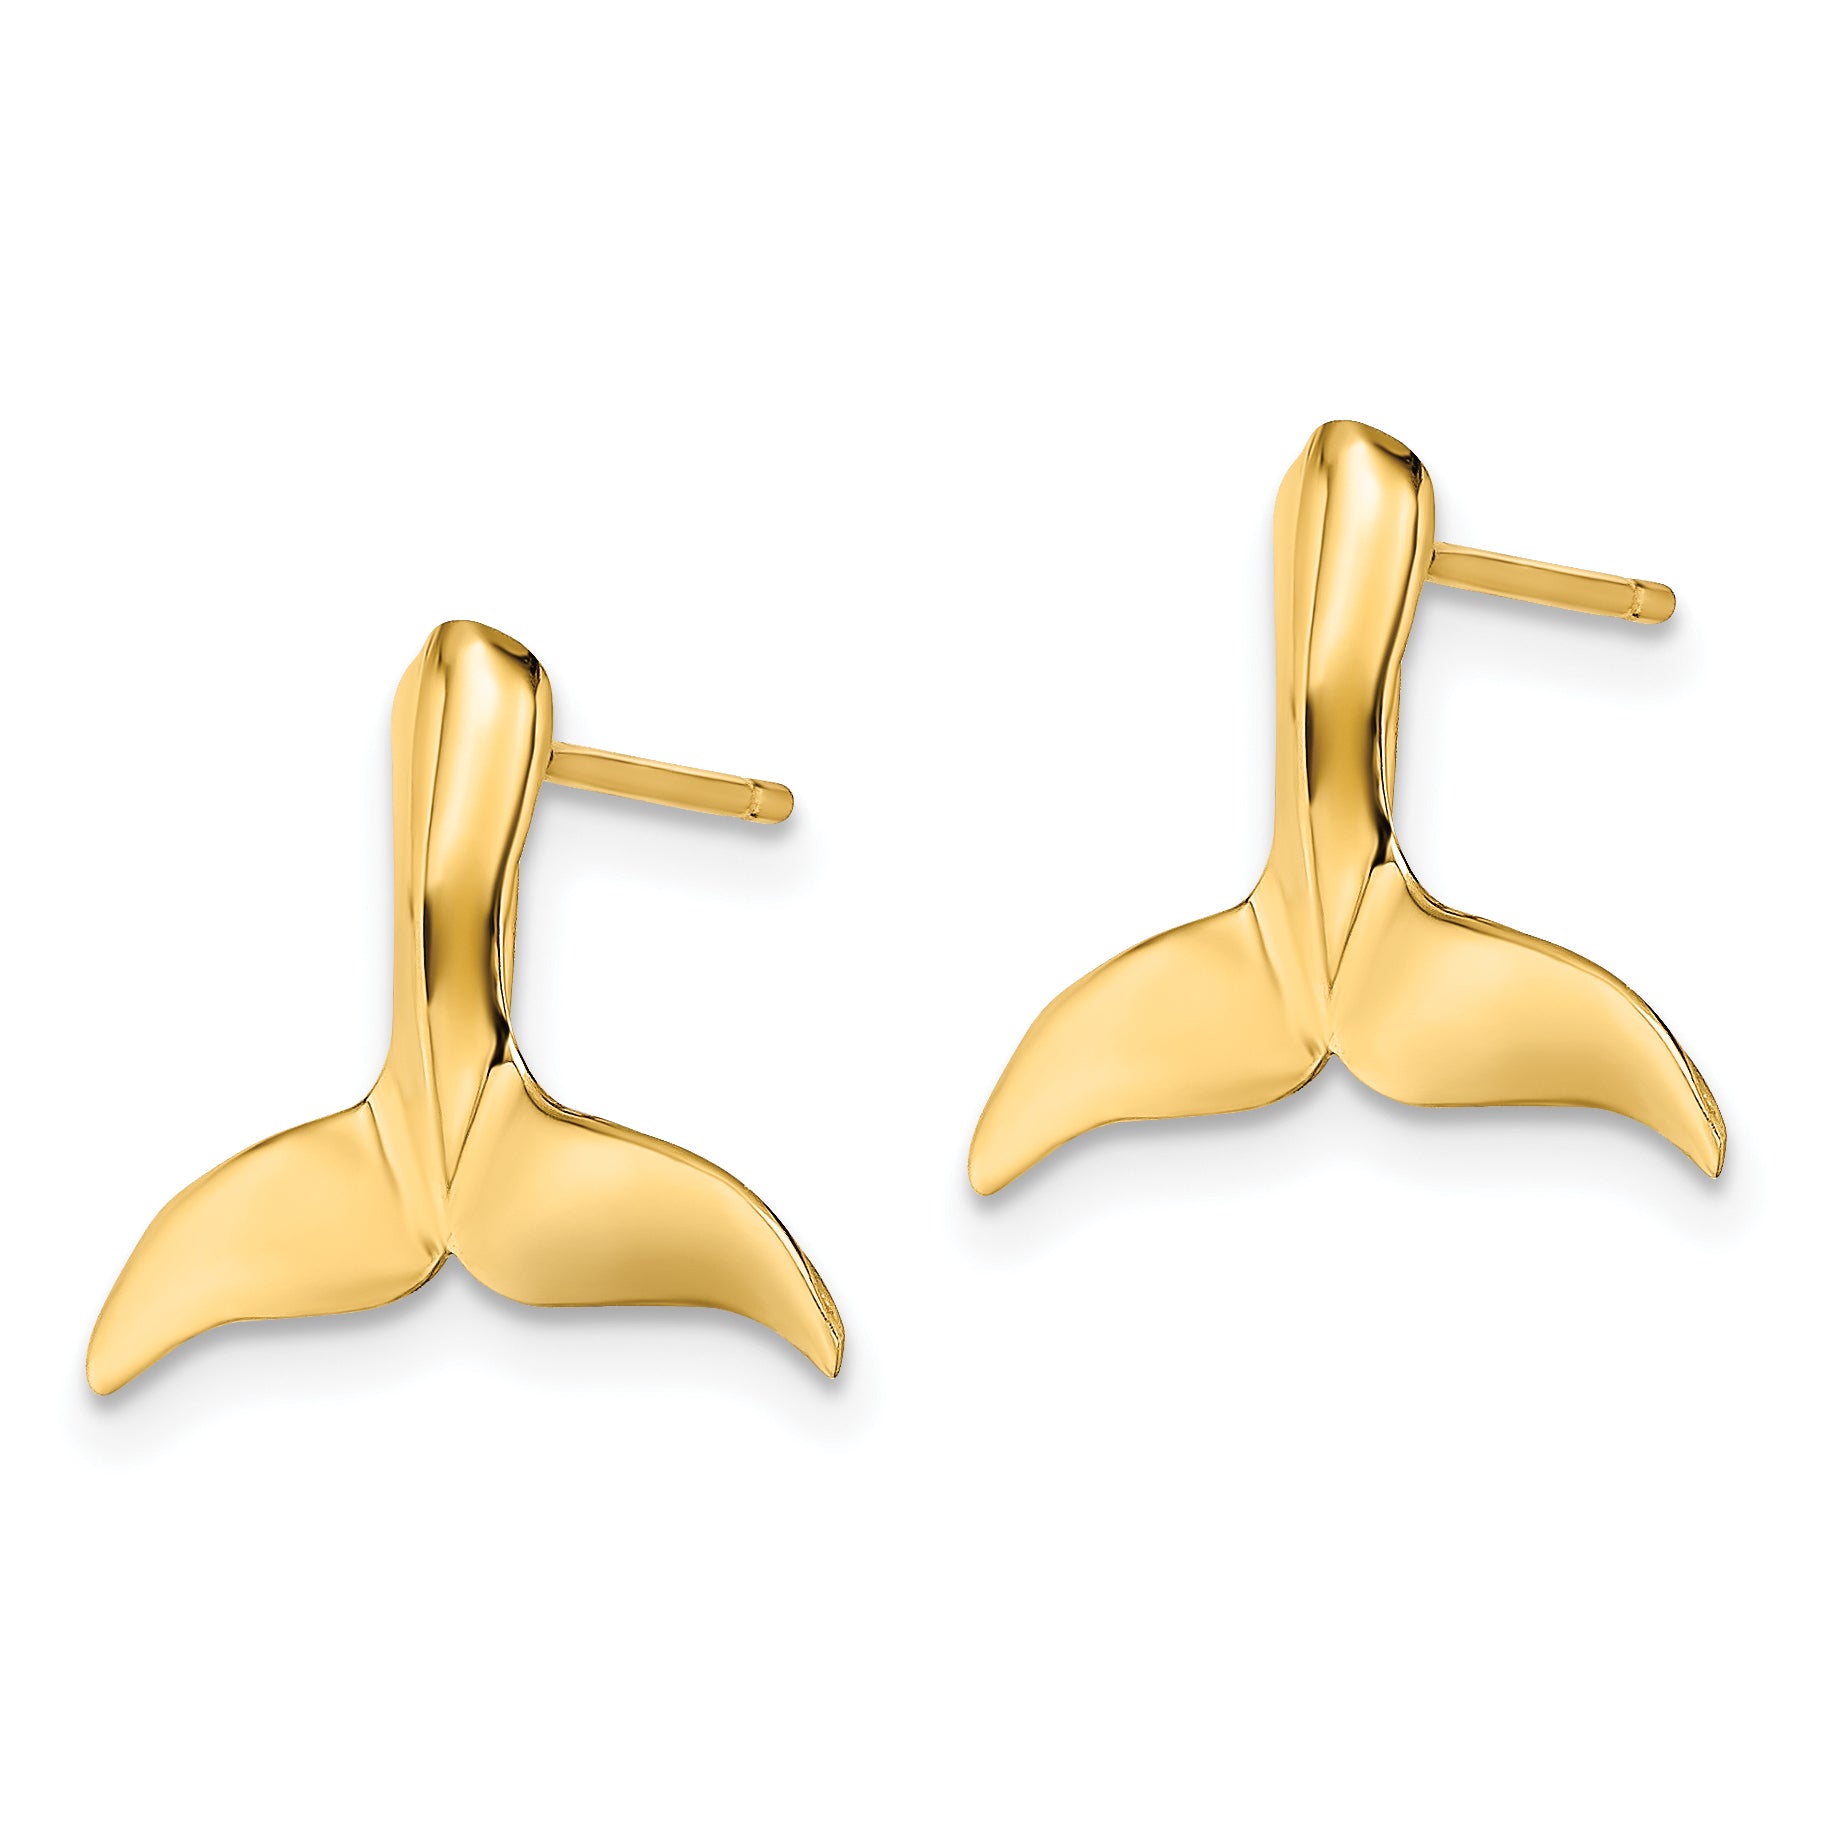 10K 2-D Whale Tail Post Earrings